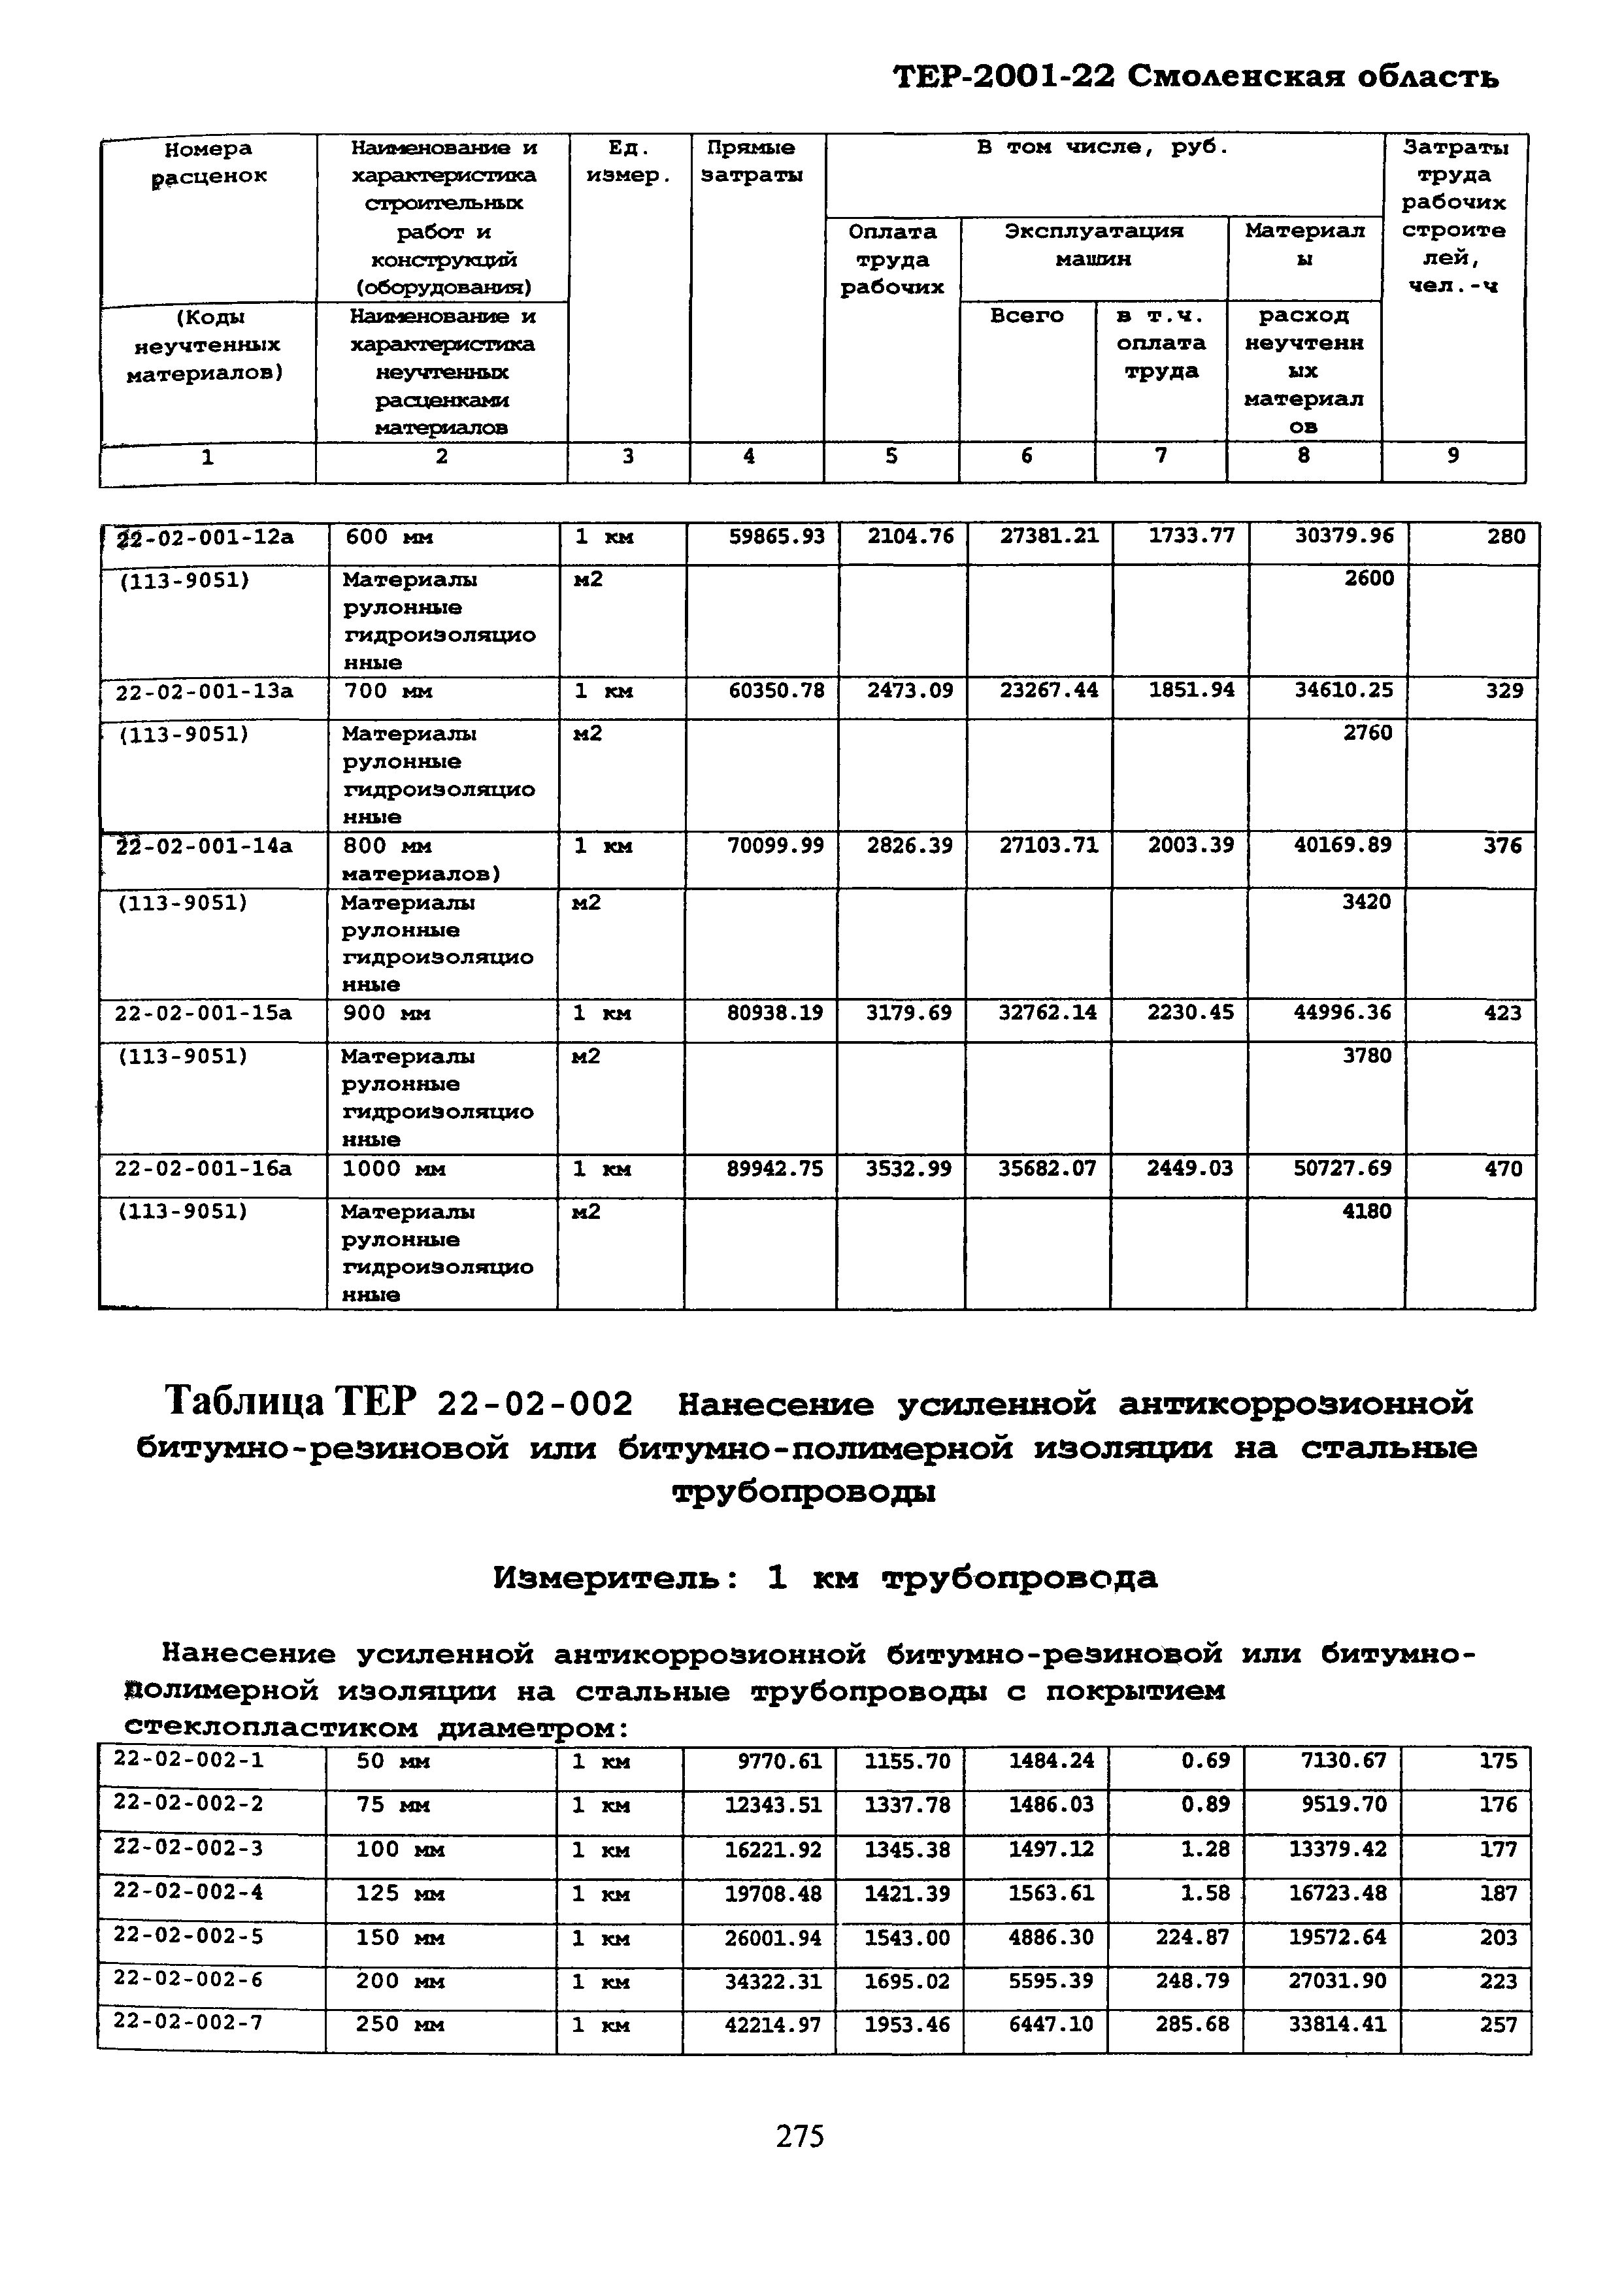 ТЕР Смоленской обл. 2001-22